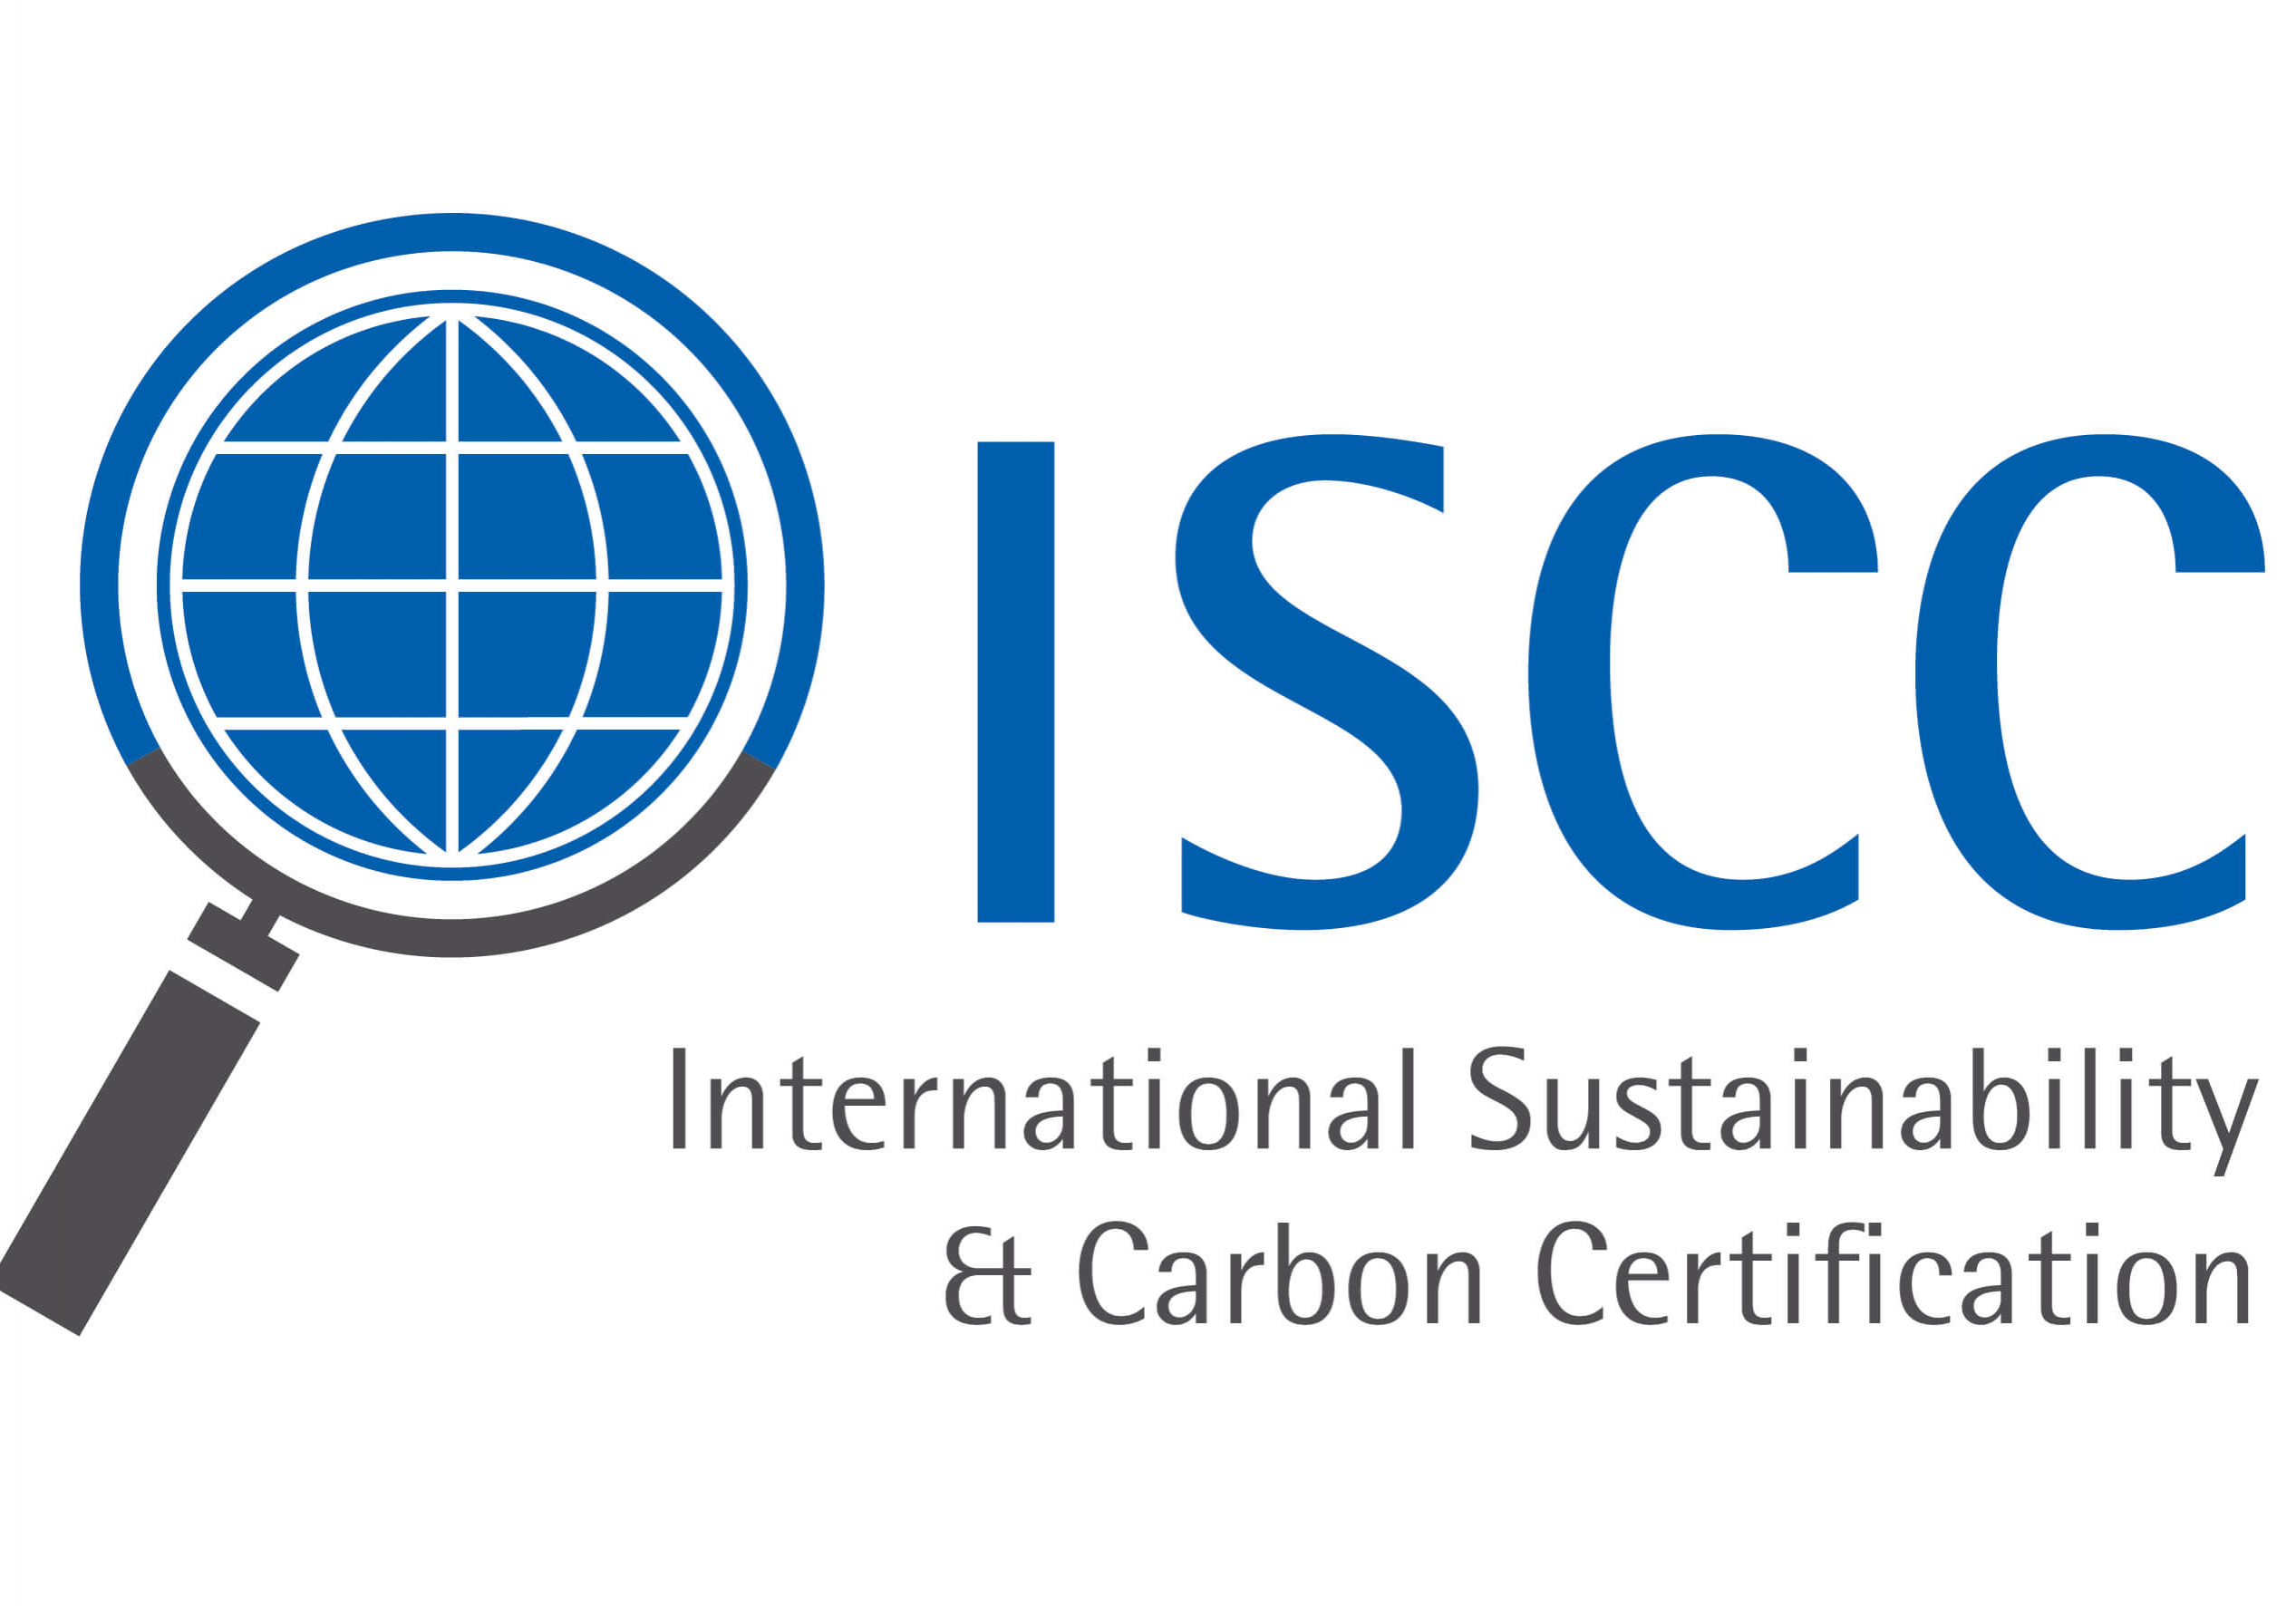 ISCC_Logo